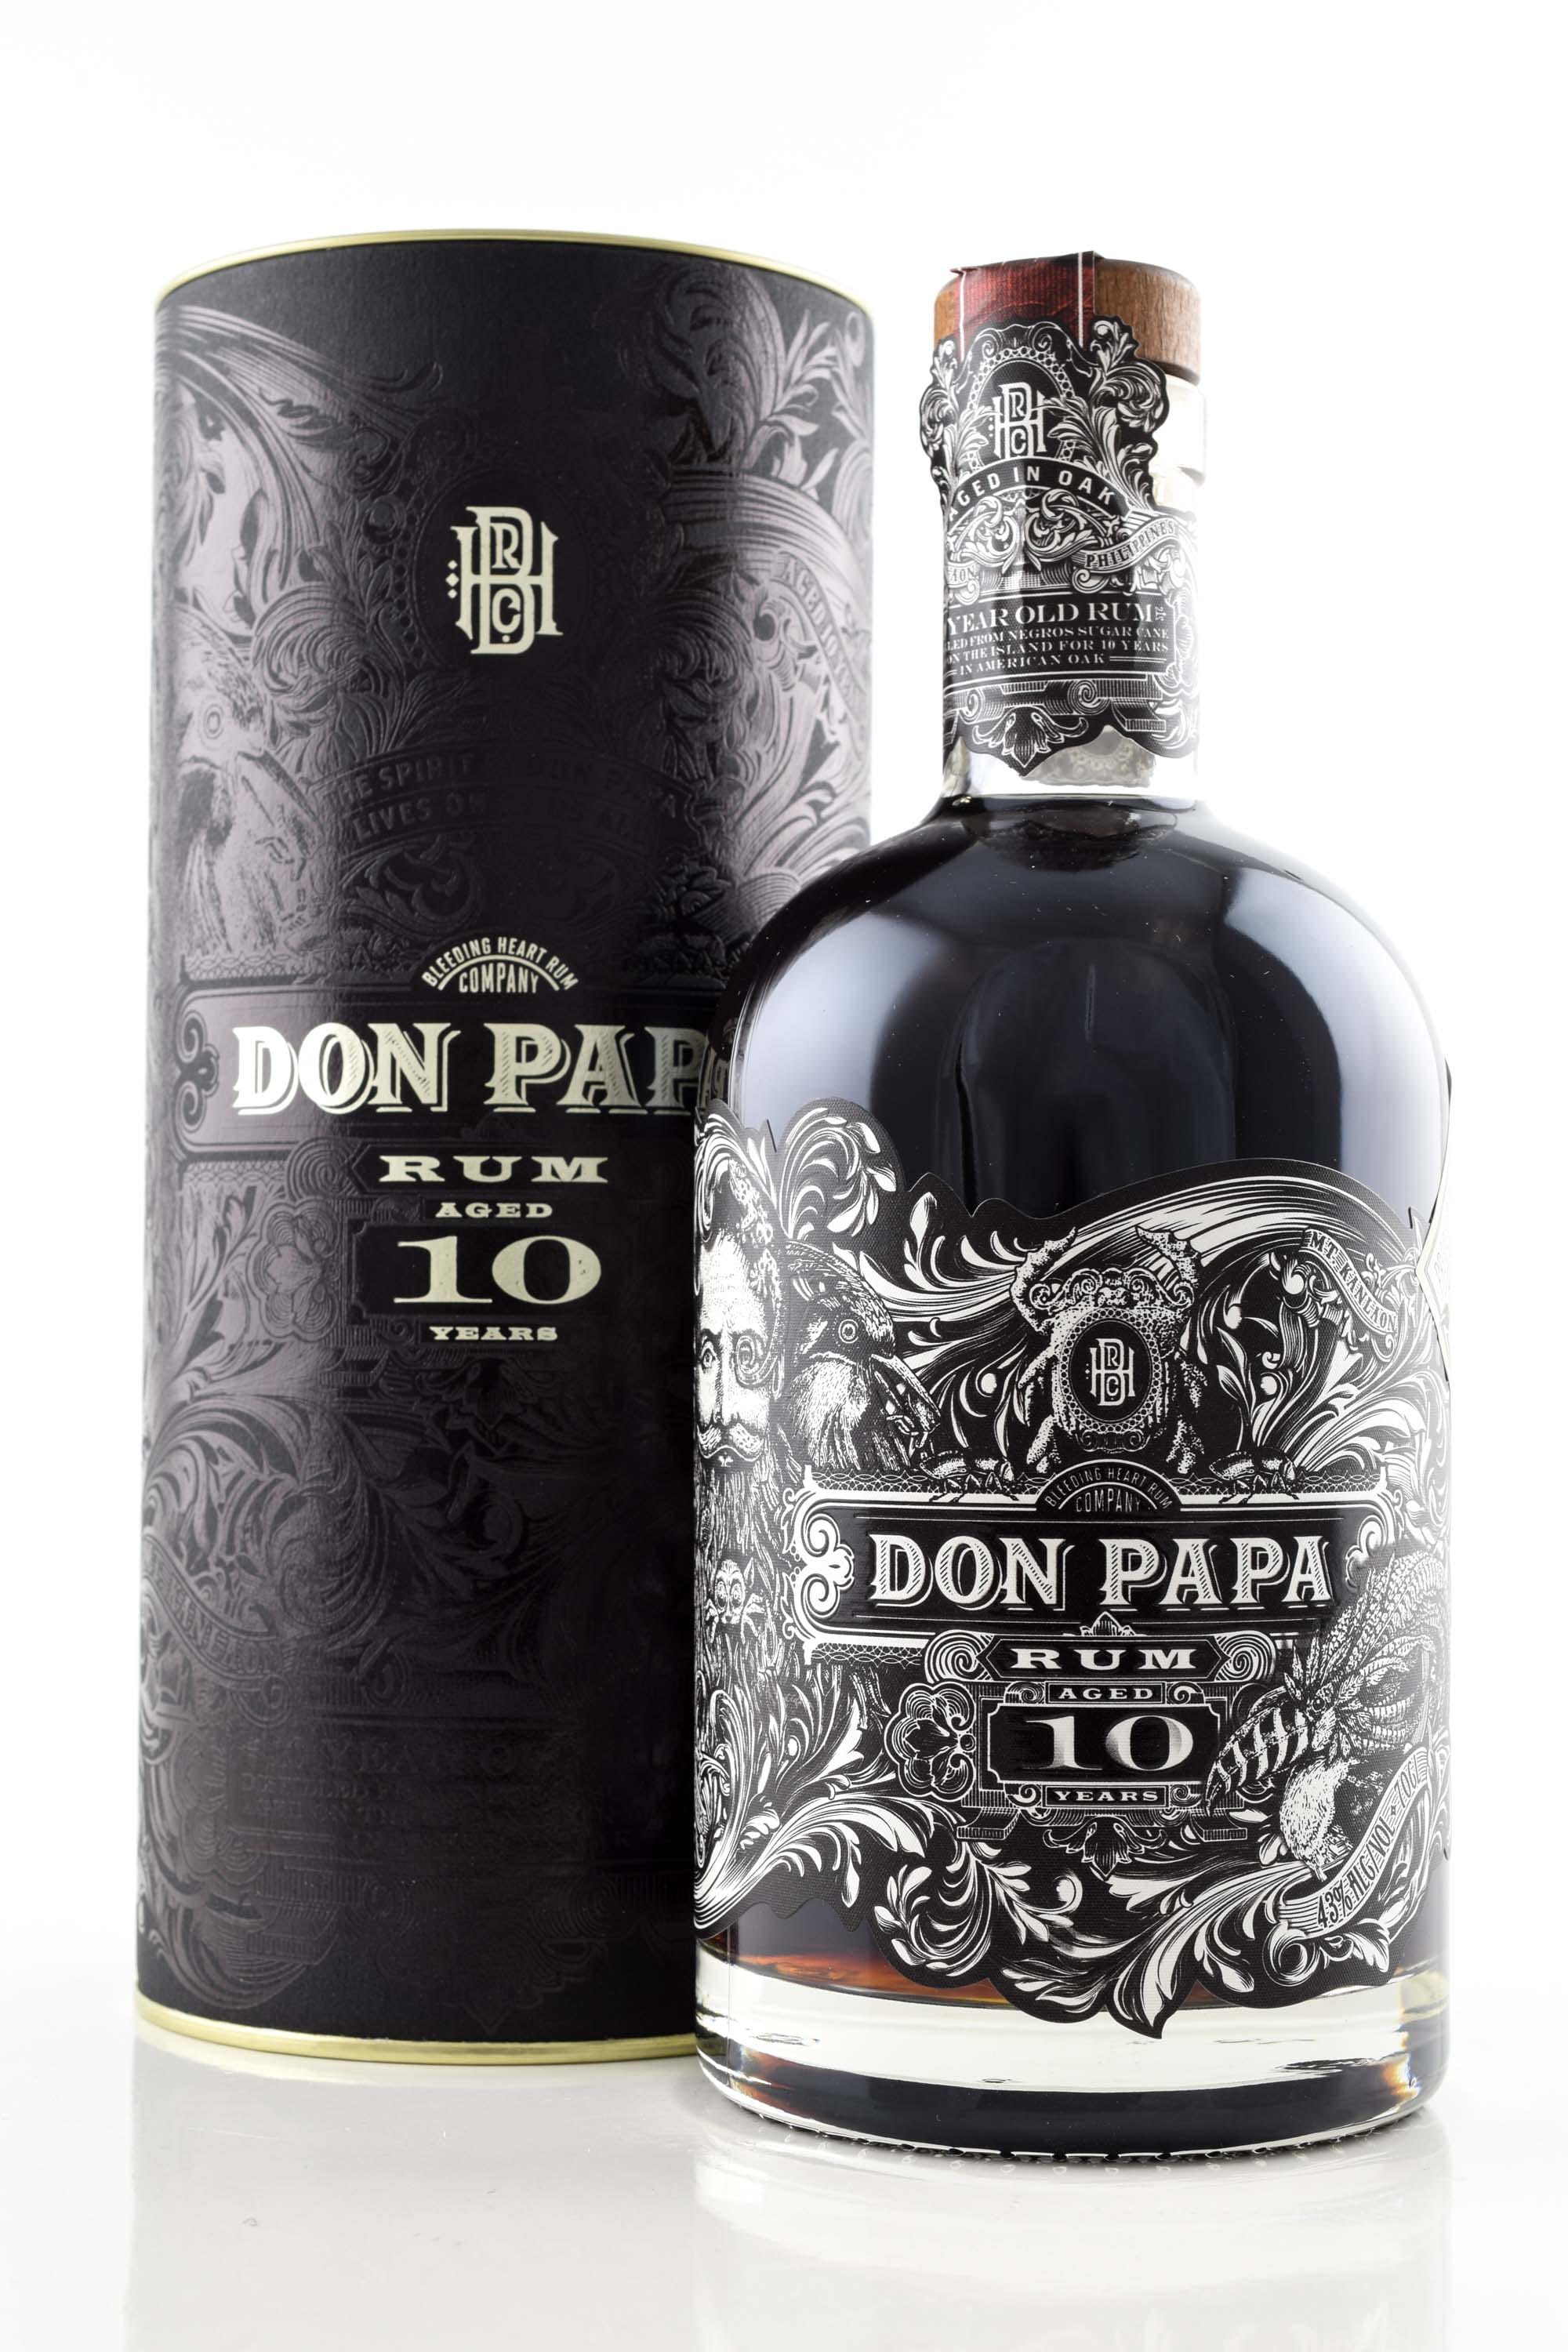 type | vol. | Don by lid Home Rum Rum metal | 43% Old Rum - Year | 10 0.7l Malts of Papa